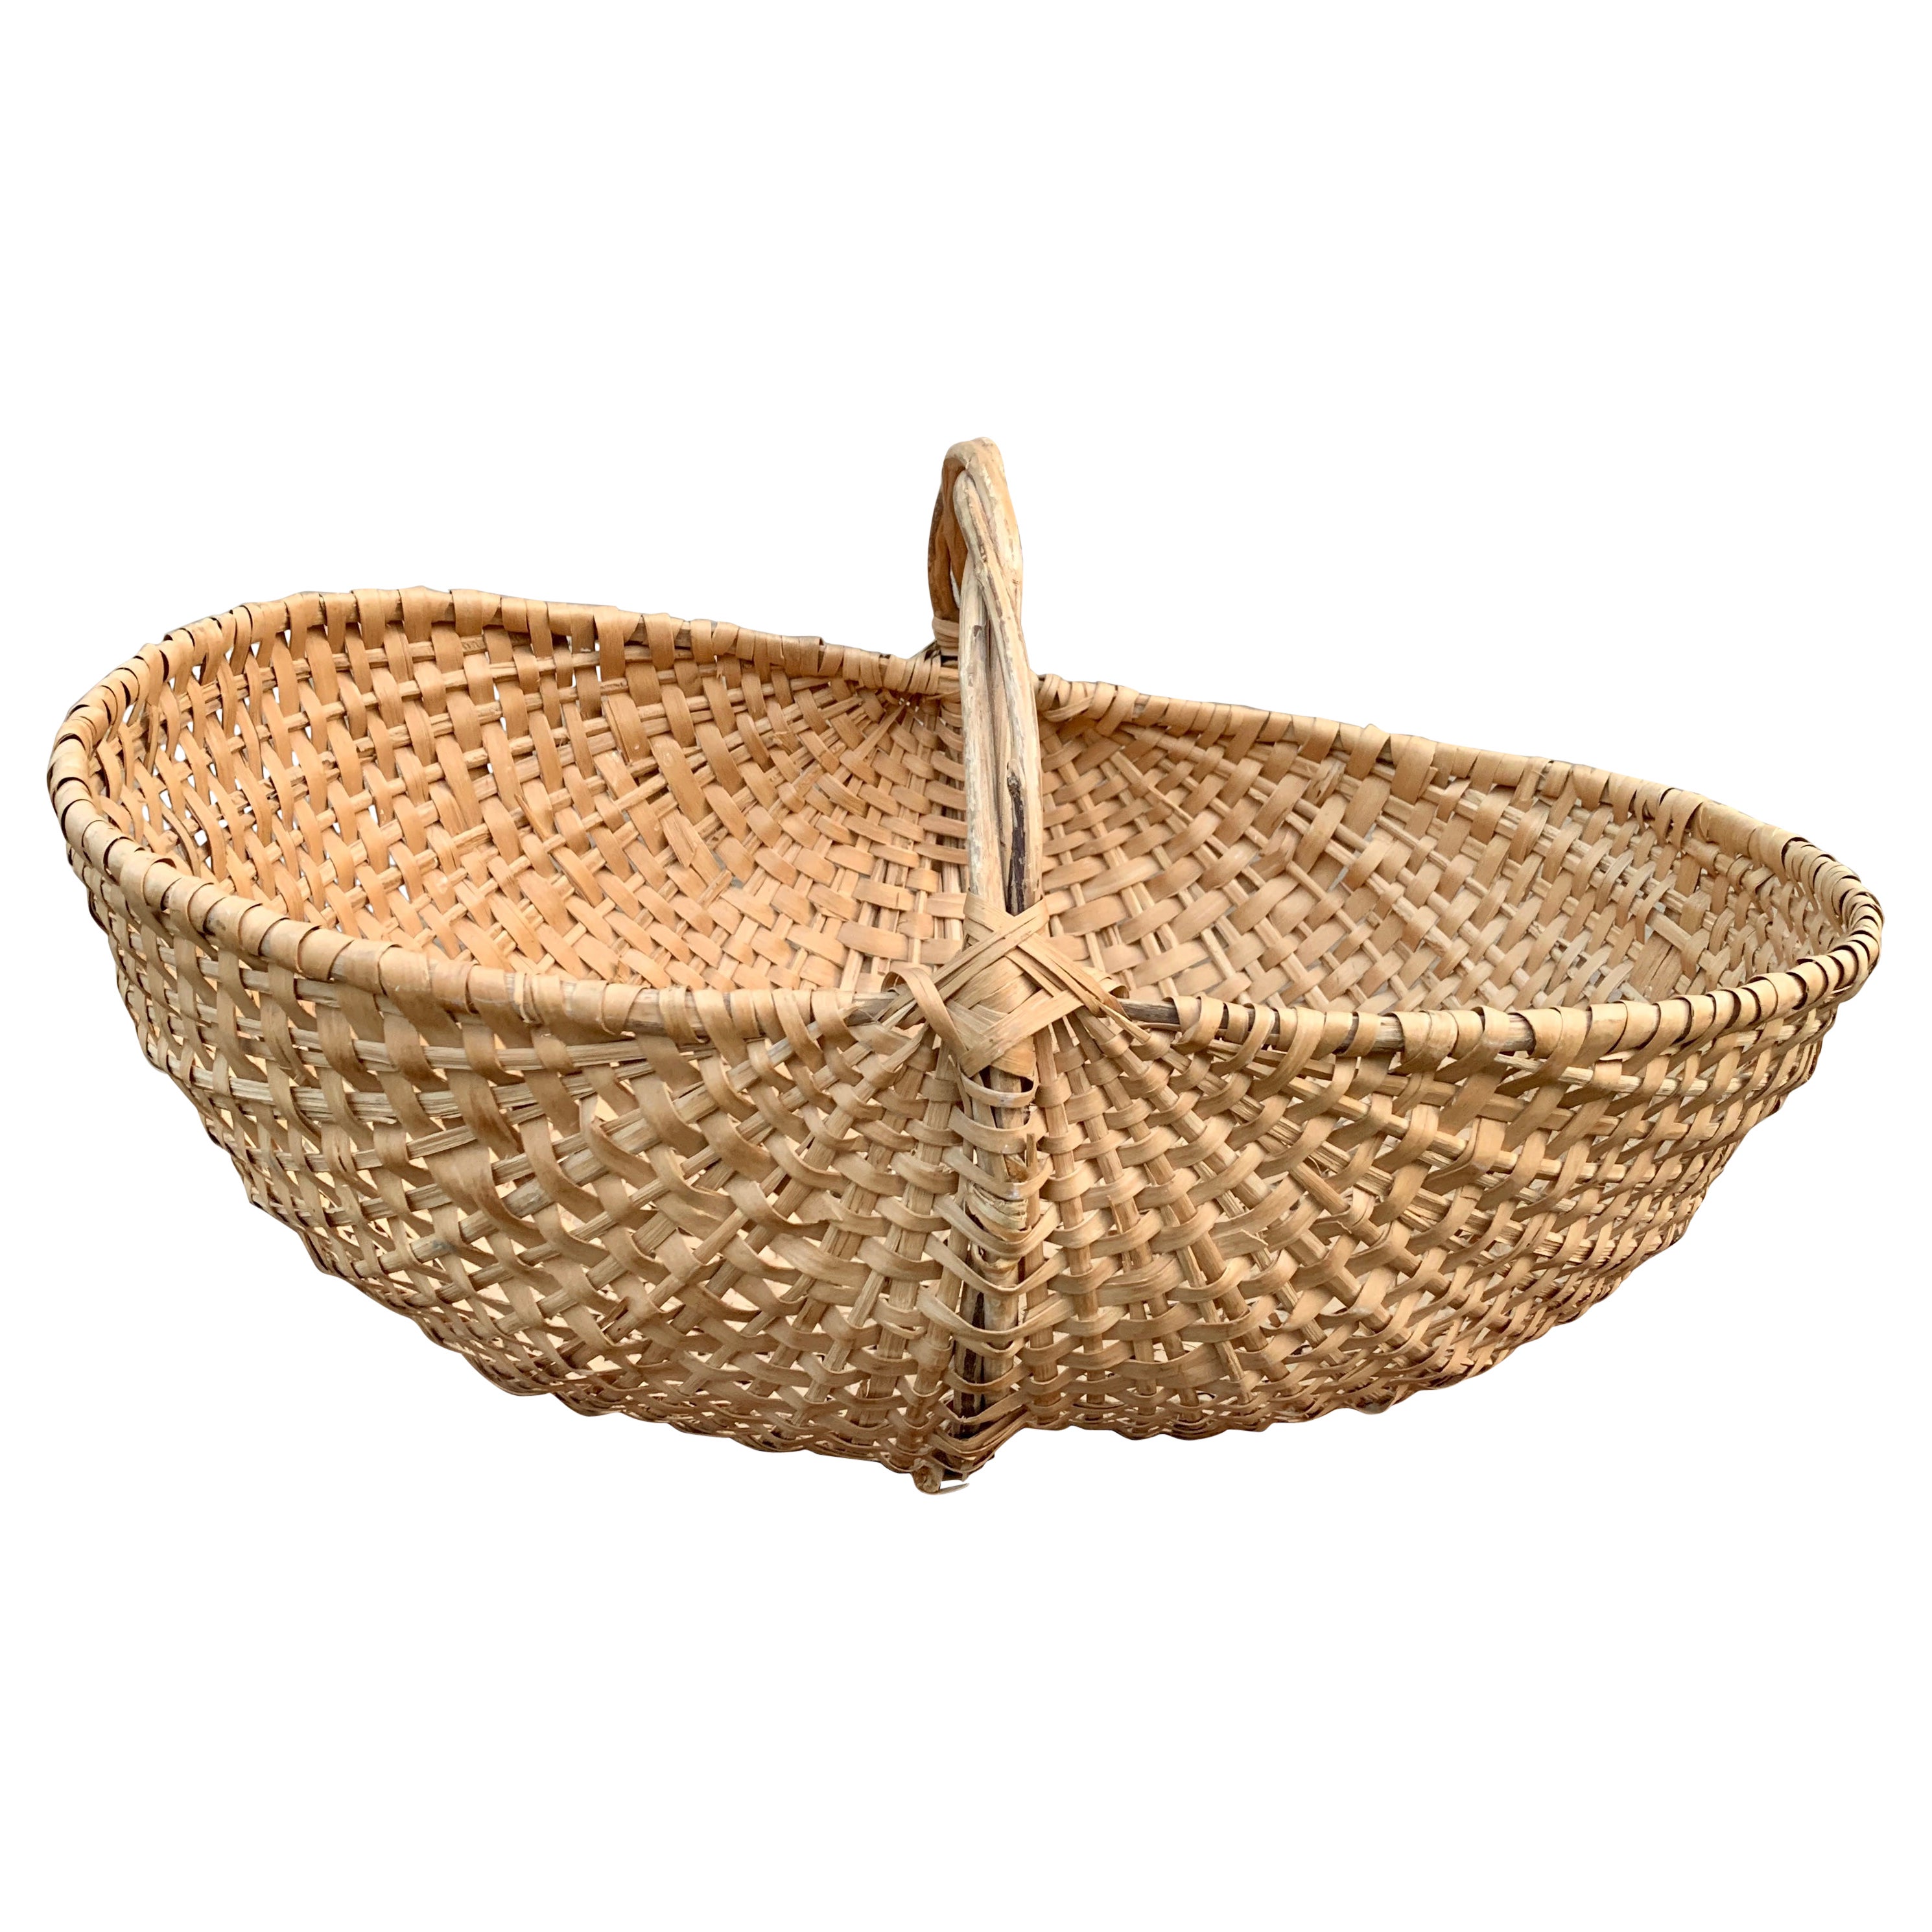 Large Early 20th Century American Splint Oak Buttocks Basket For Sale